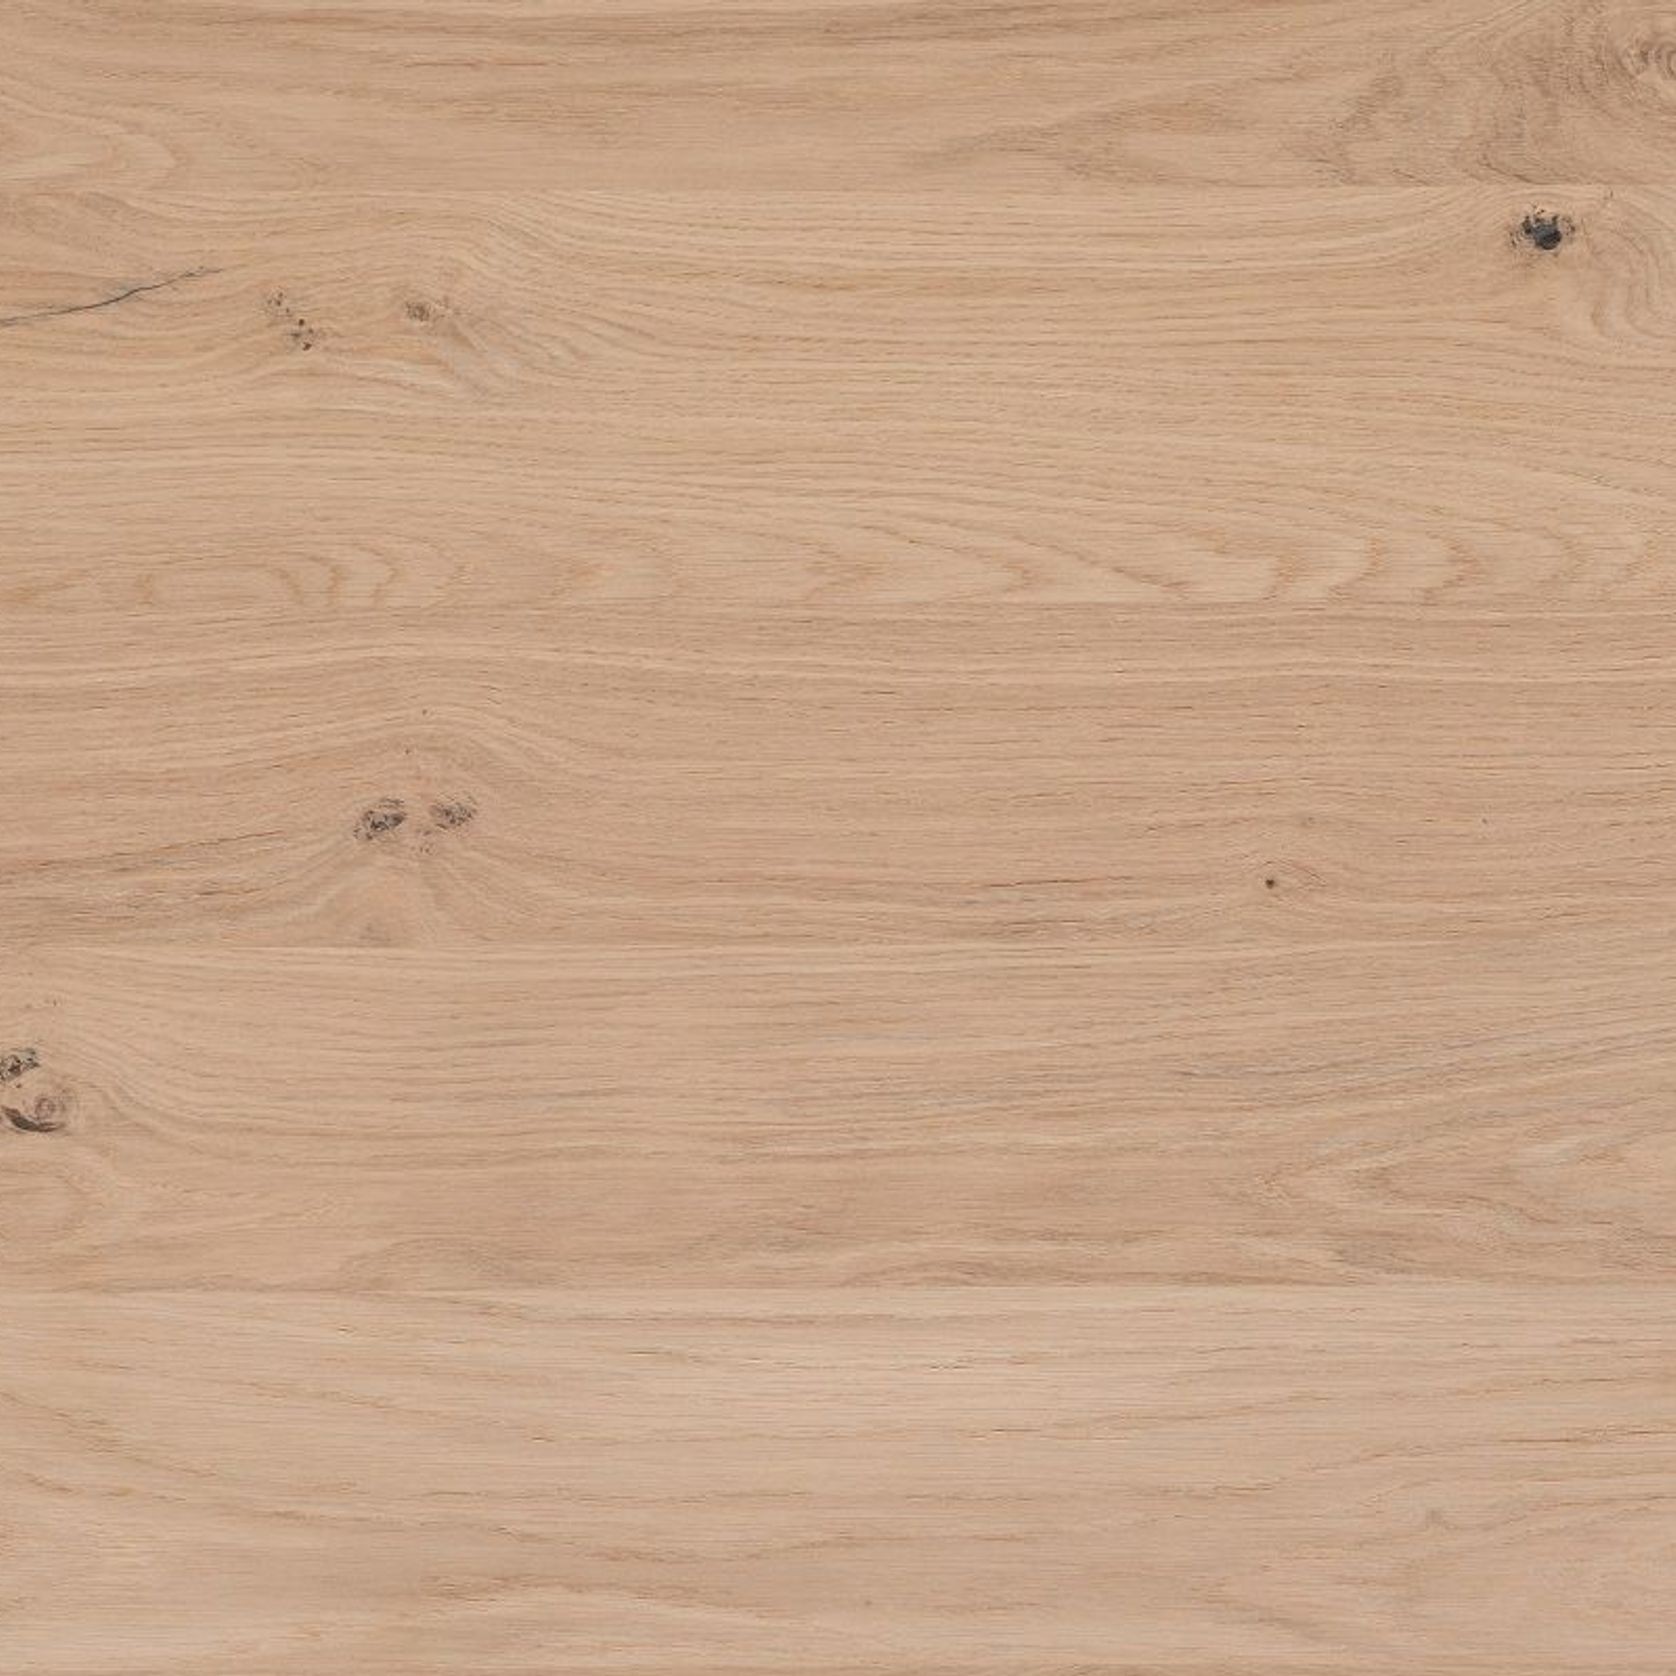 Rustica Knotty Oak | Rustic Timber Veneer Panels gallery detail image